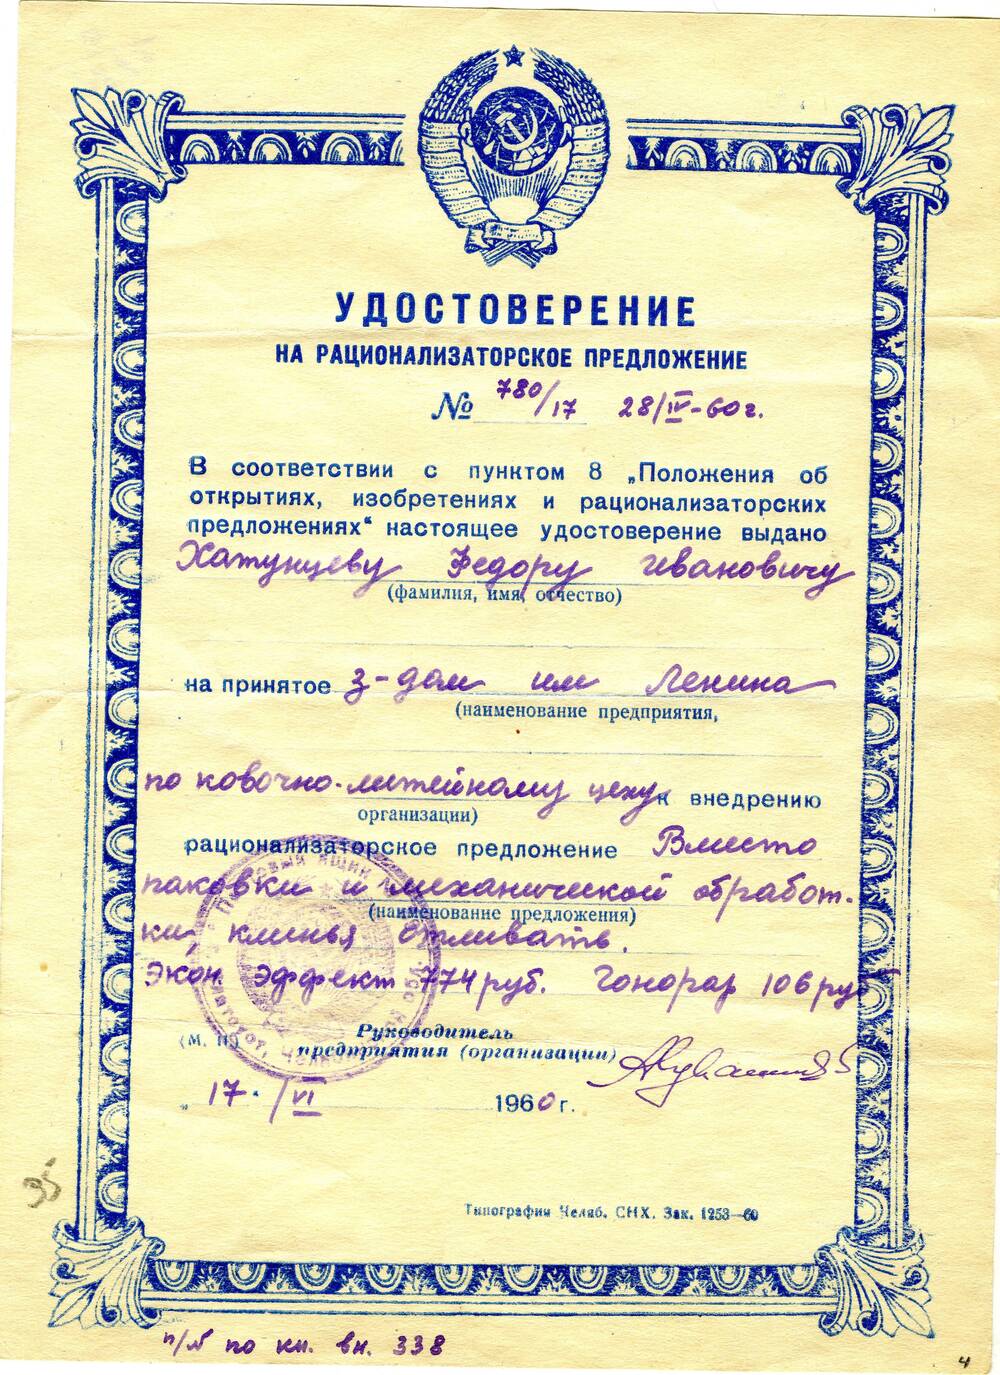 Удостоверение на рационализаторское предложение №780/17 Хатунцева Федора Ивановича. 1960 г.